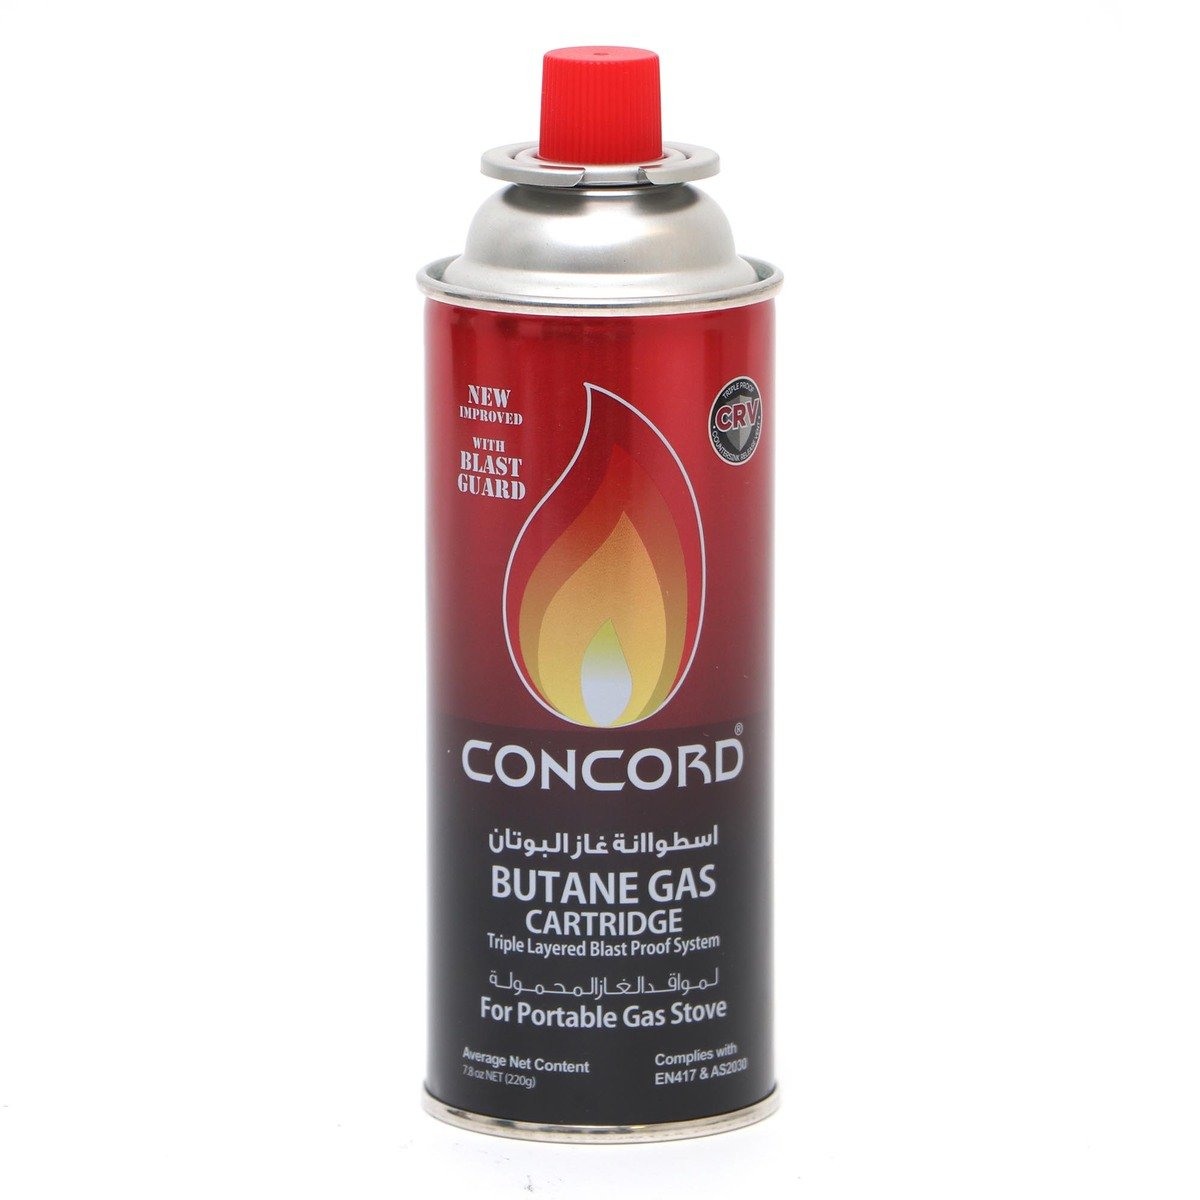 Concord Butane Gas Cartridge 220g